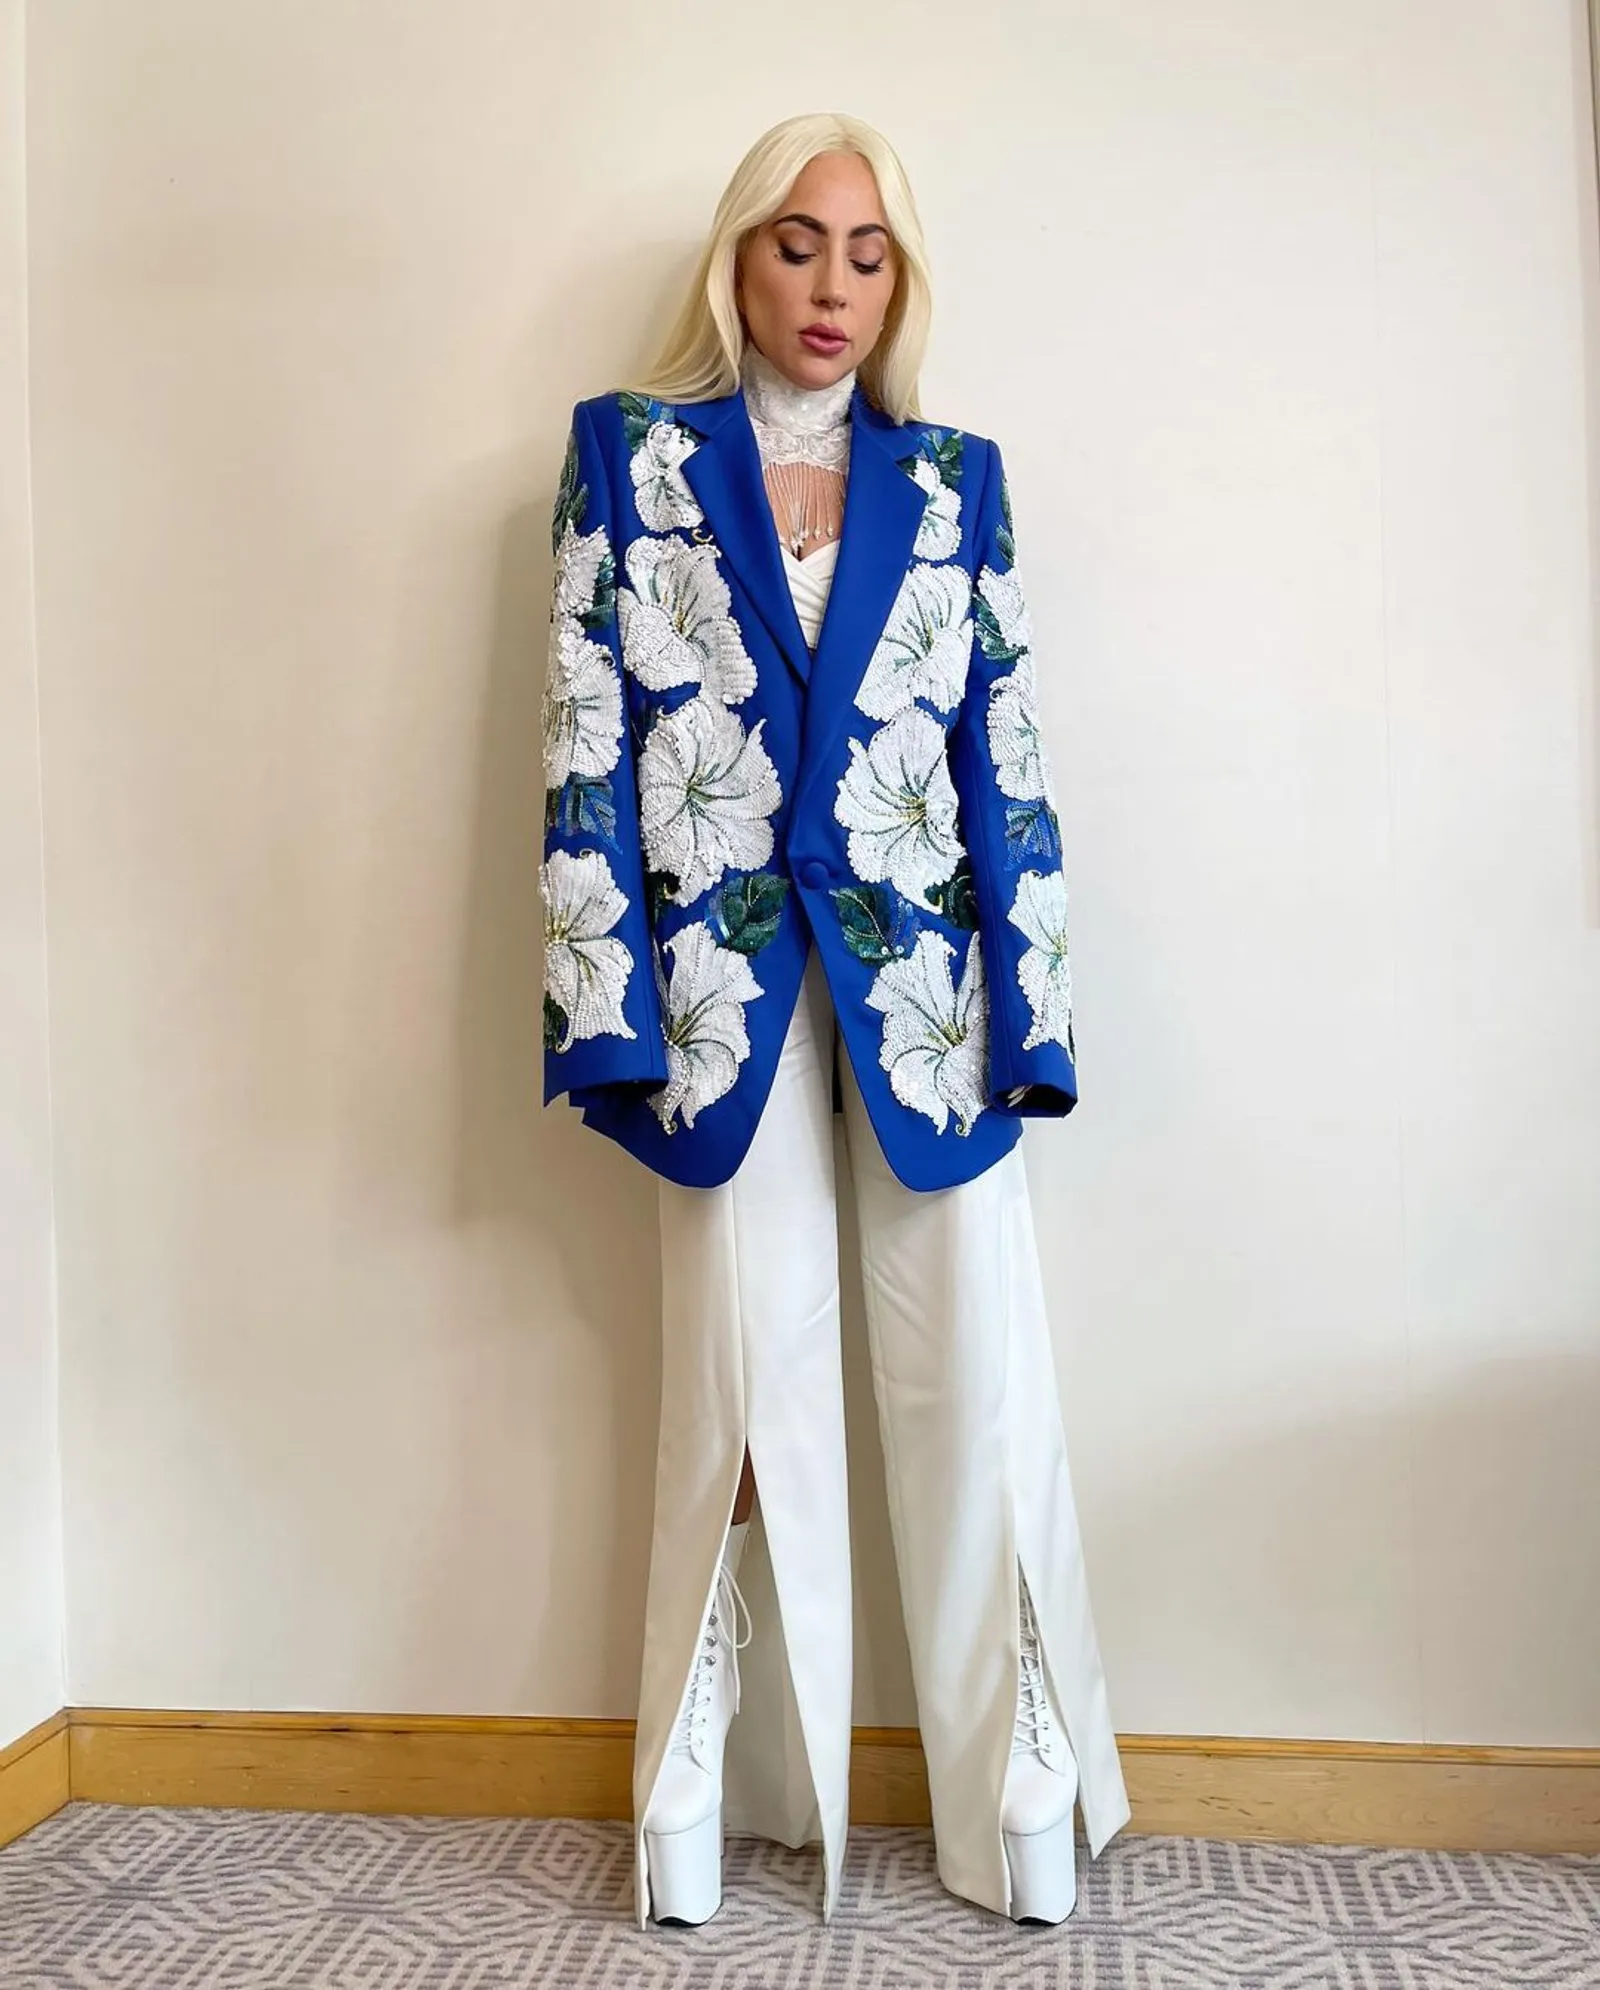 10 Gaya Mewah dan Seksi Lady Gaga saat Promosikan House of Gucci 